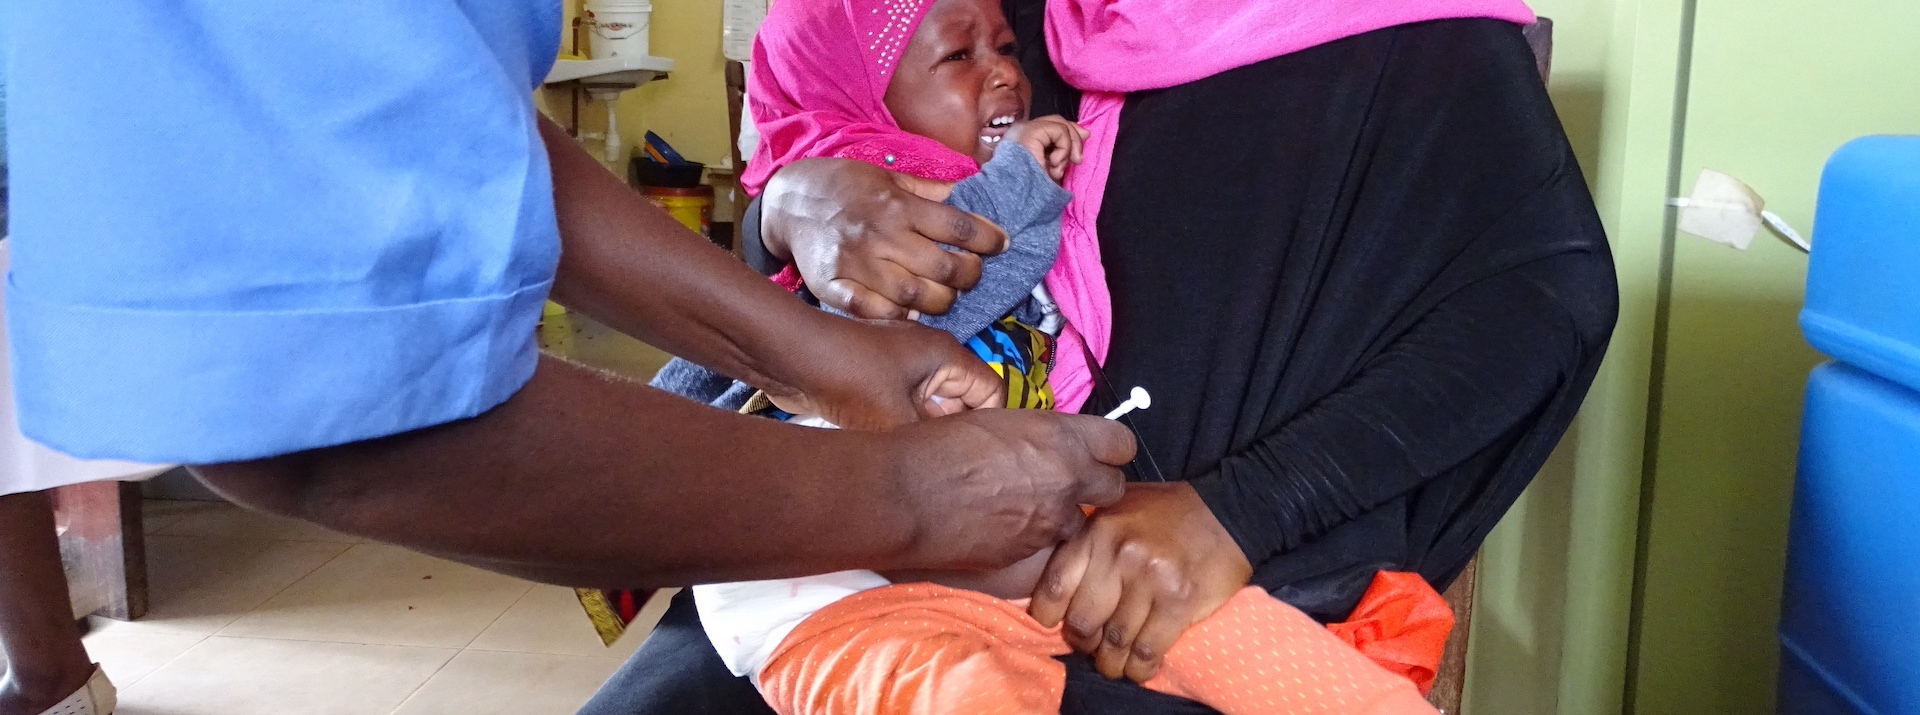 Retard dans les campagnes de vaccination : les pays face au risque de flambées majeures de rougeole